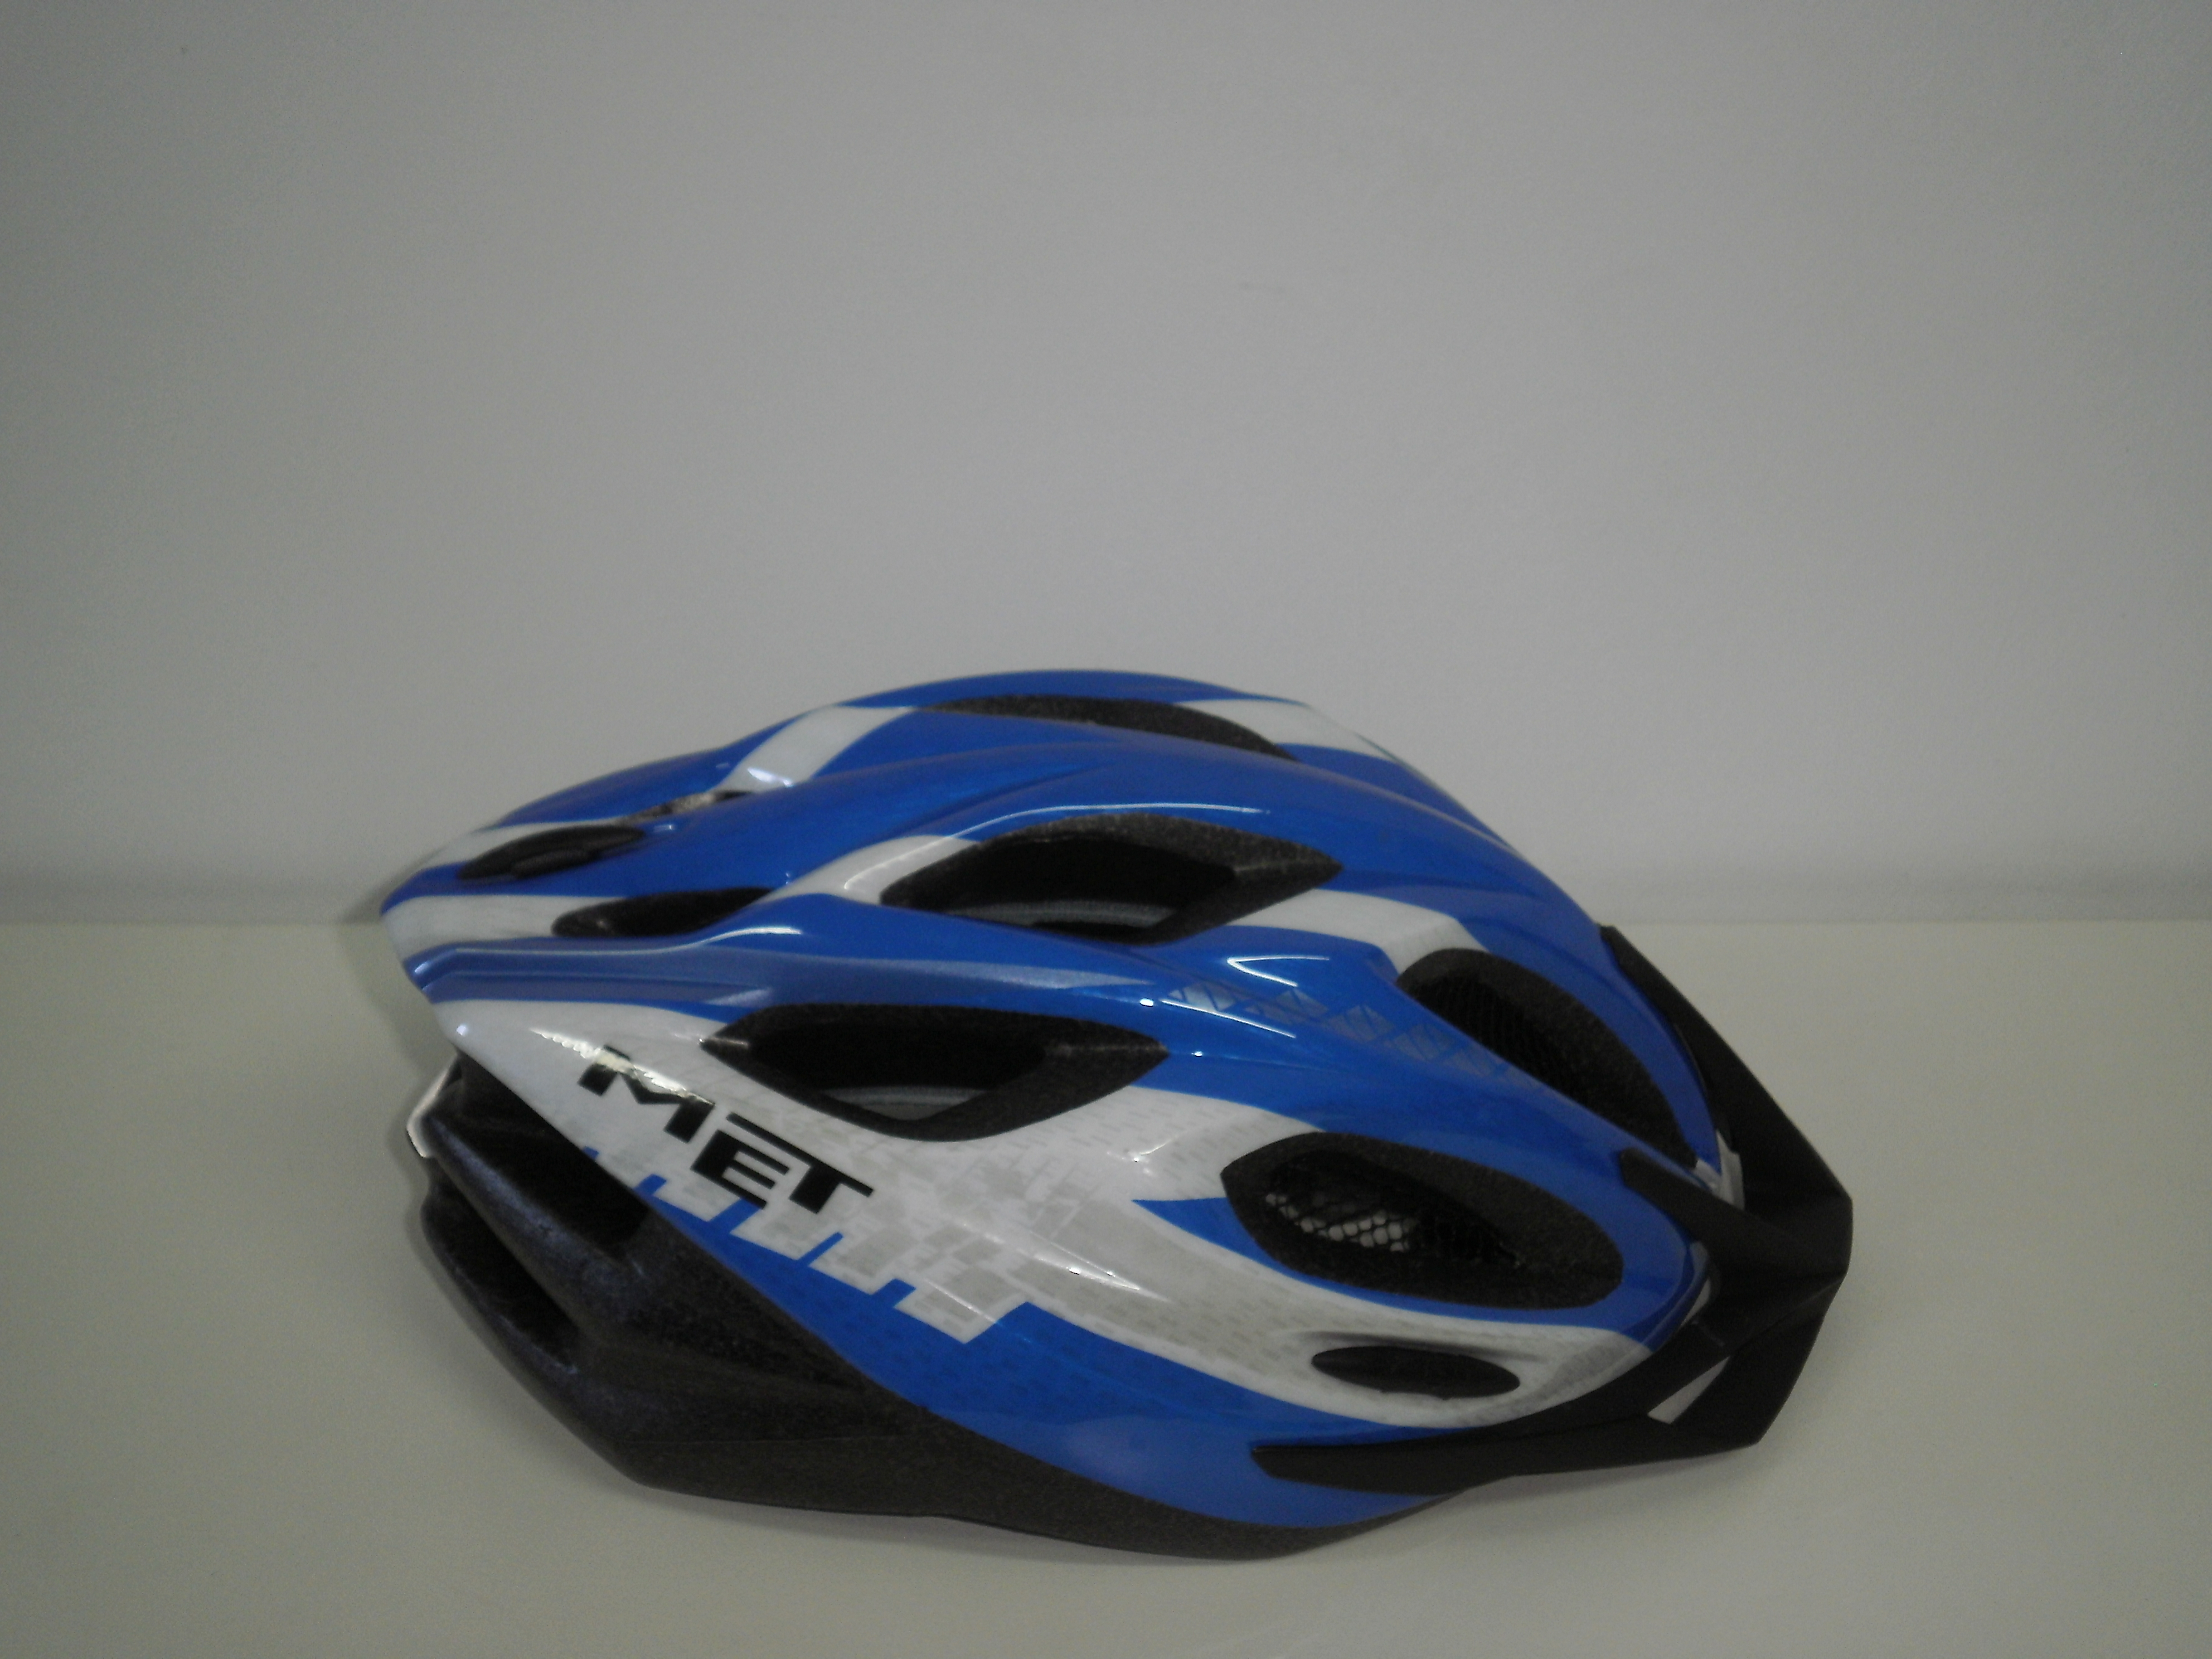 Helmet side